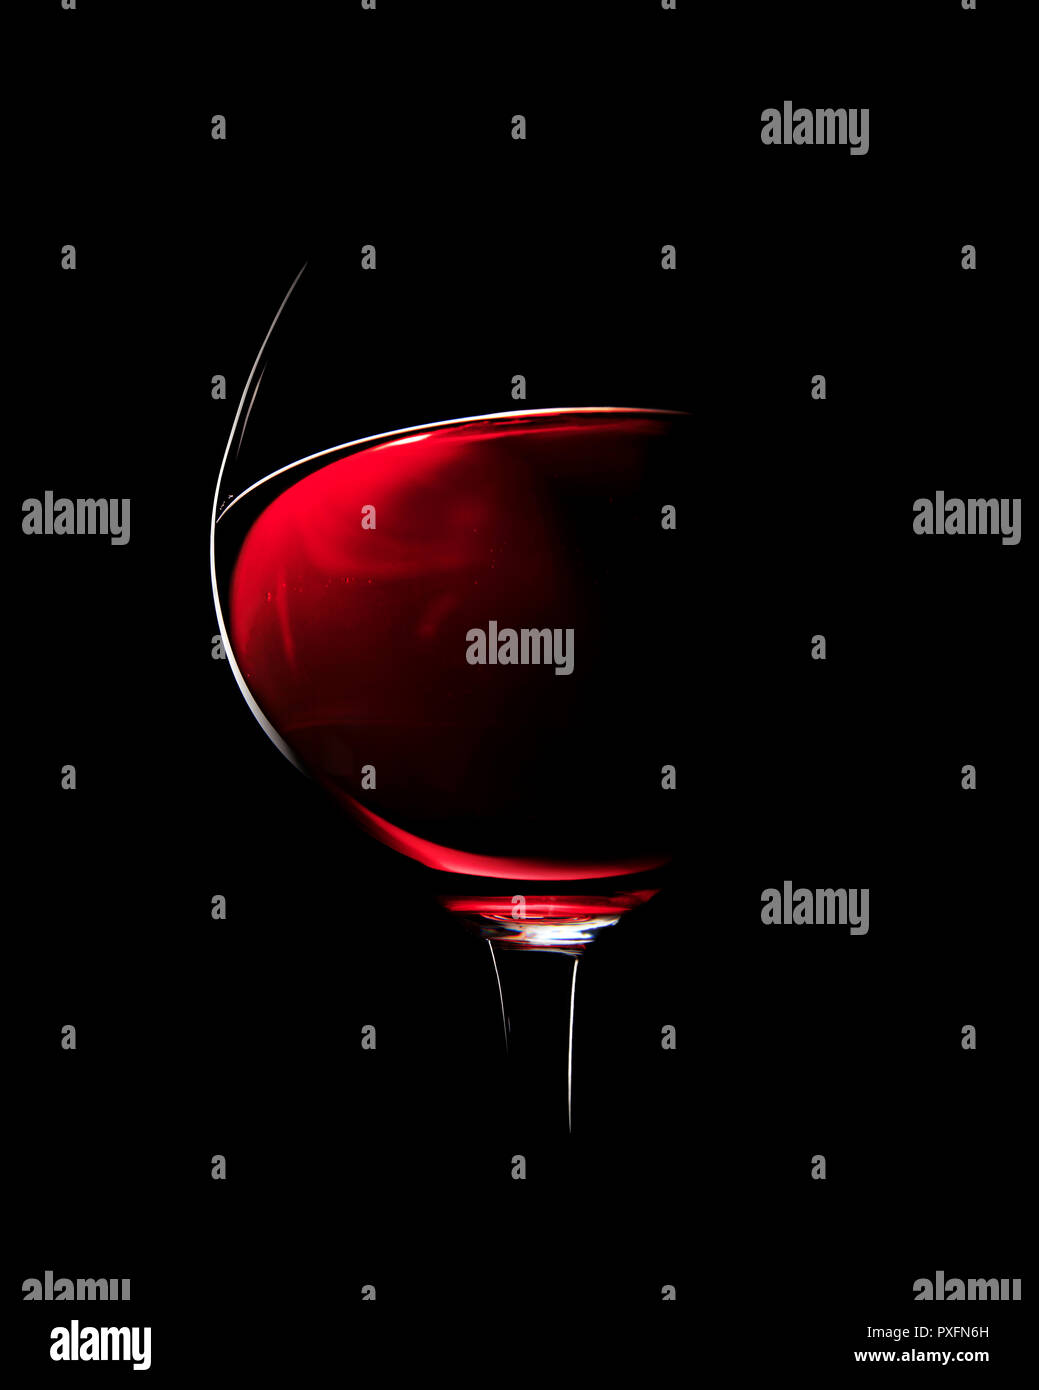 Un vaso de vino tinto fotografiado con luz rim contra el fondo negro (enfoque en el borde del cristal) Foto de stock